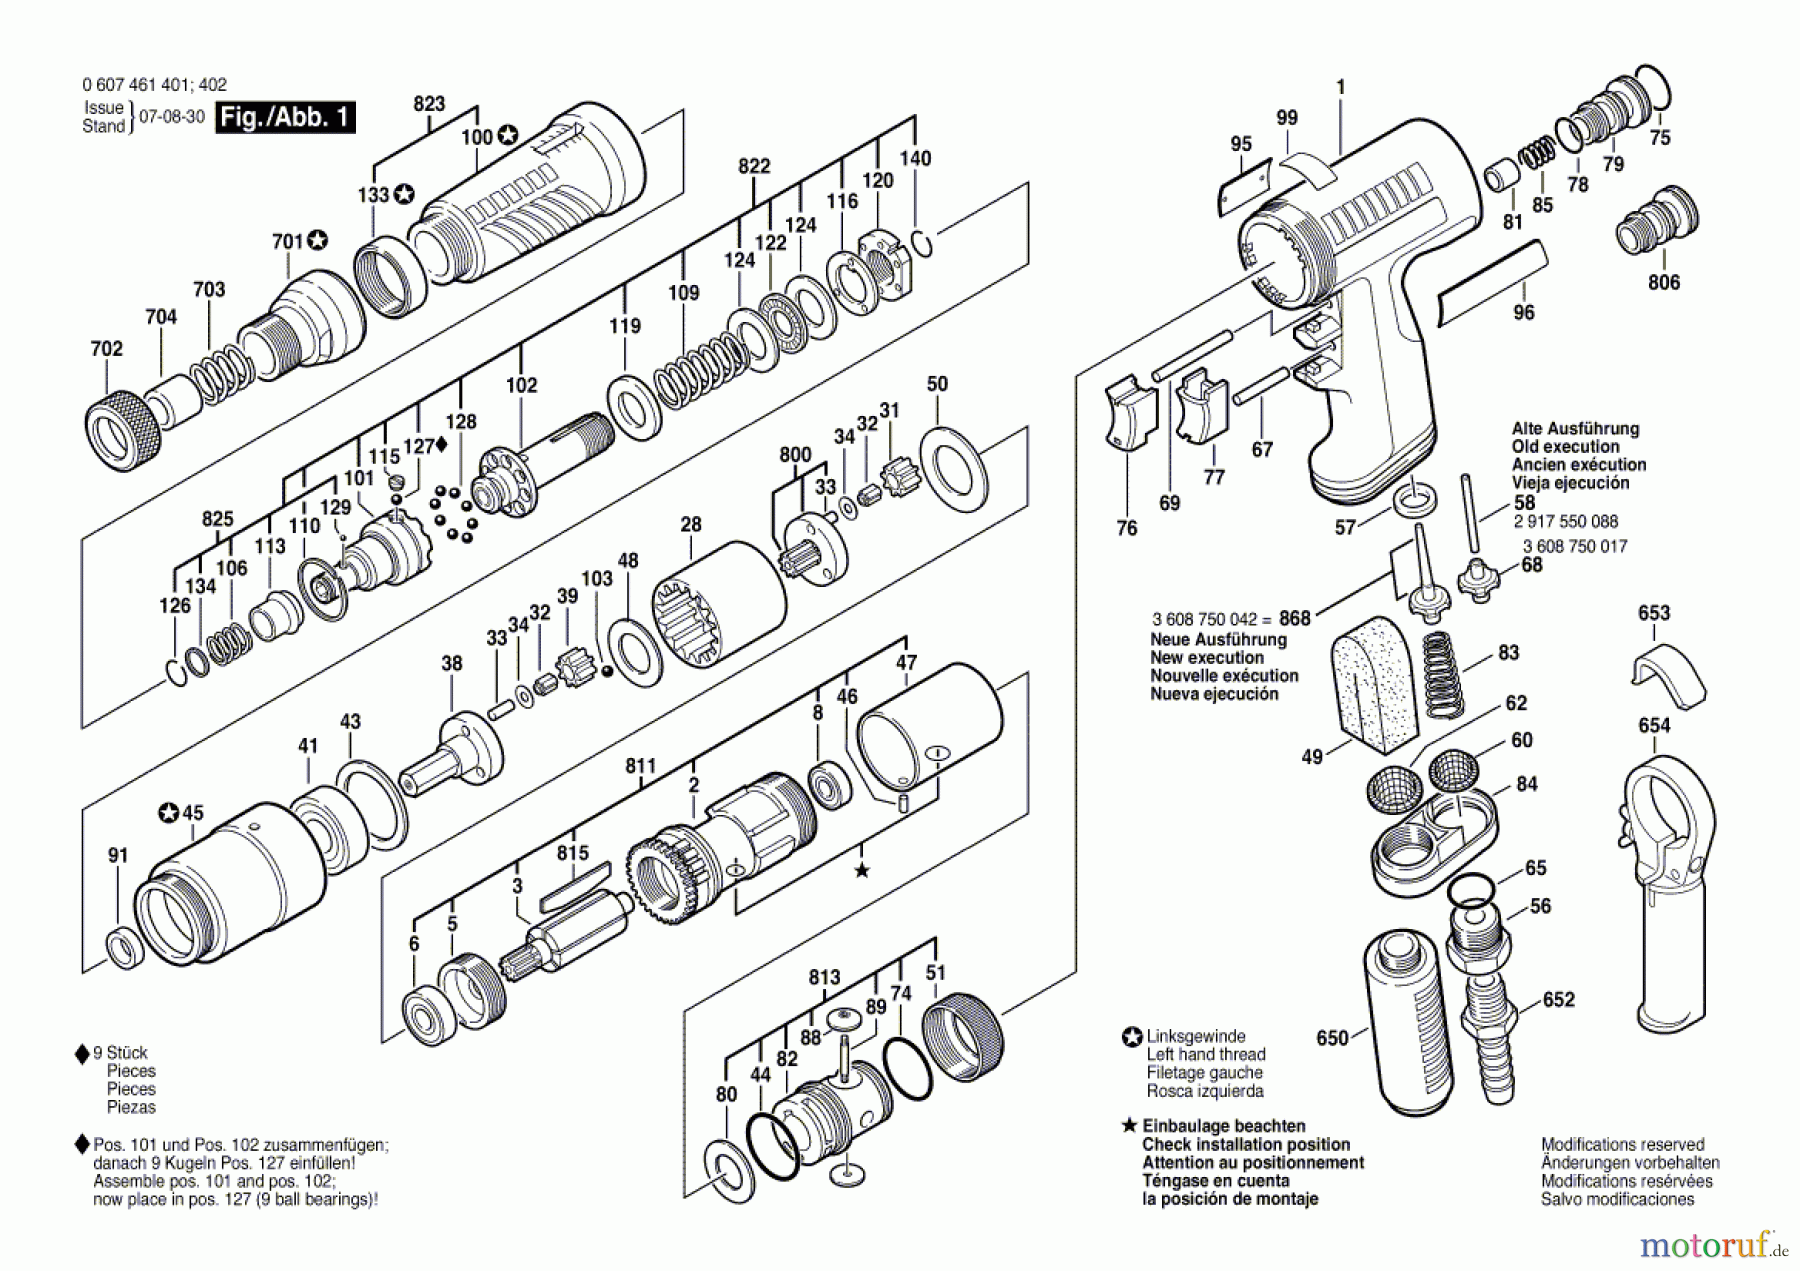  Bosch Werkzeug Pw-Schrauber-Ind 400 WATT-SERIE Seite 1